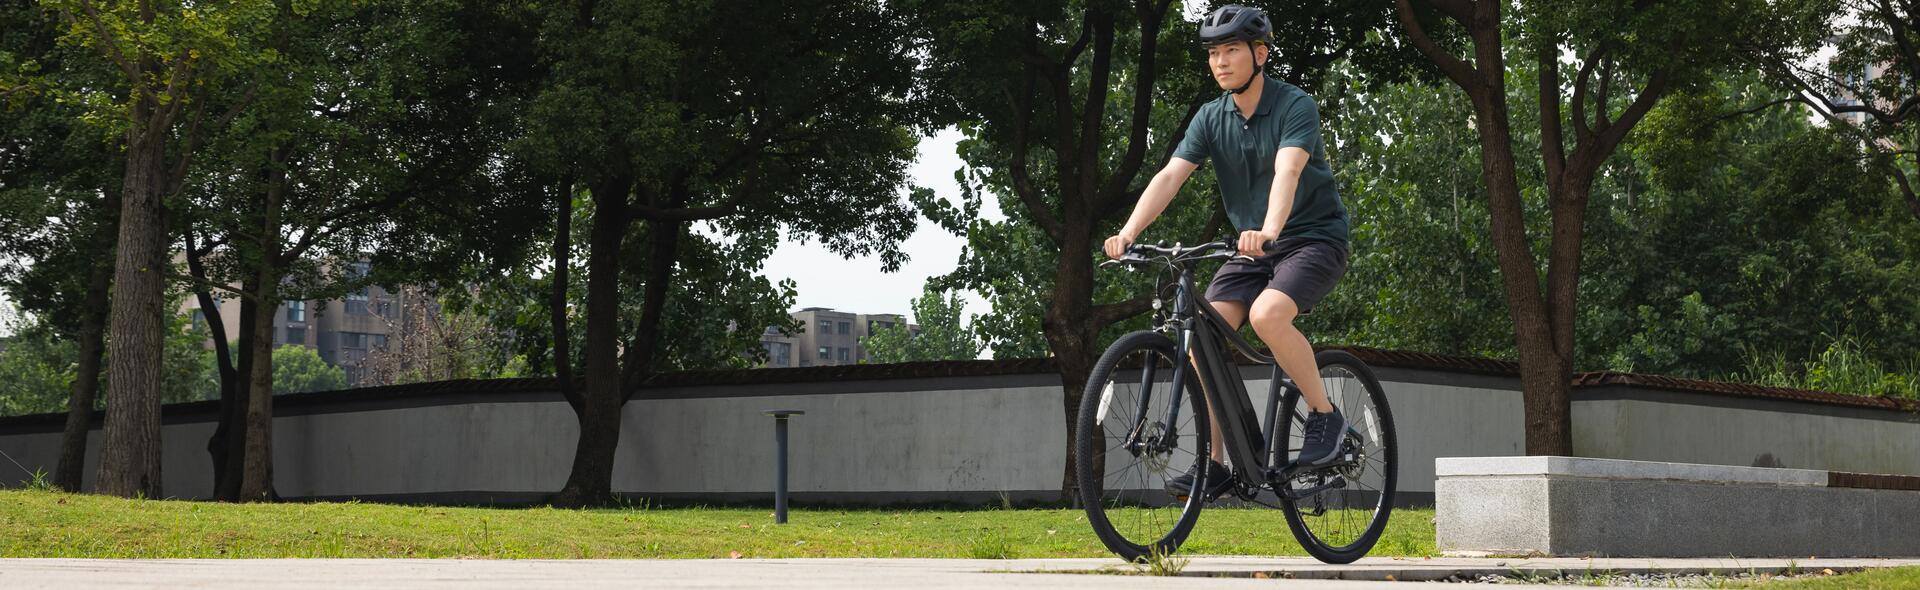 Młody mężczyzna jedzie na rowerze przez park w stroju sportowym i kaski